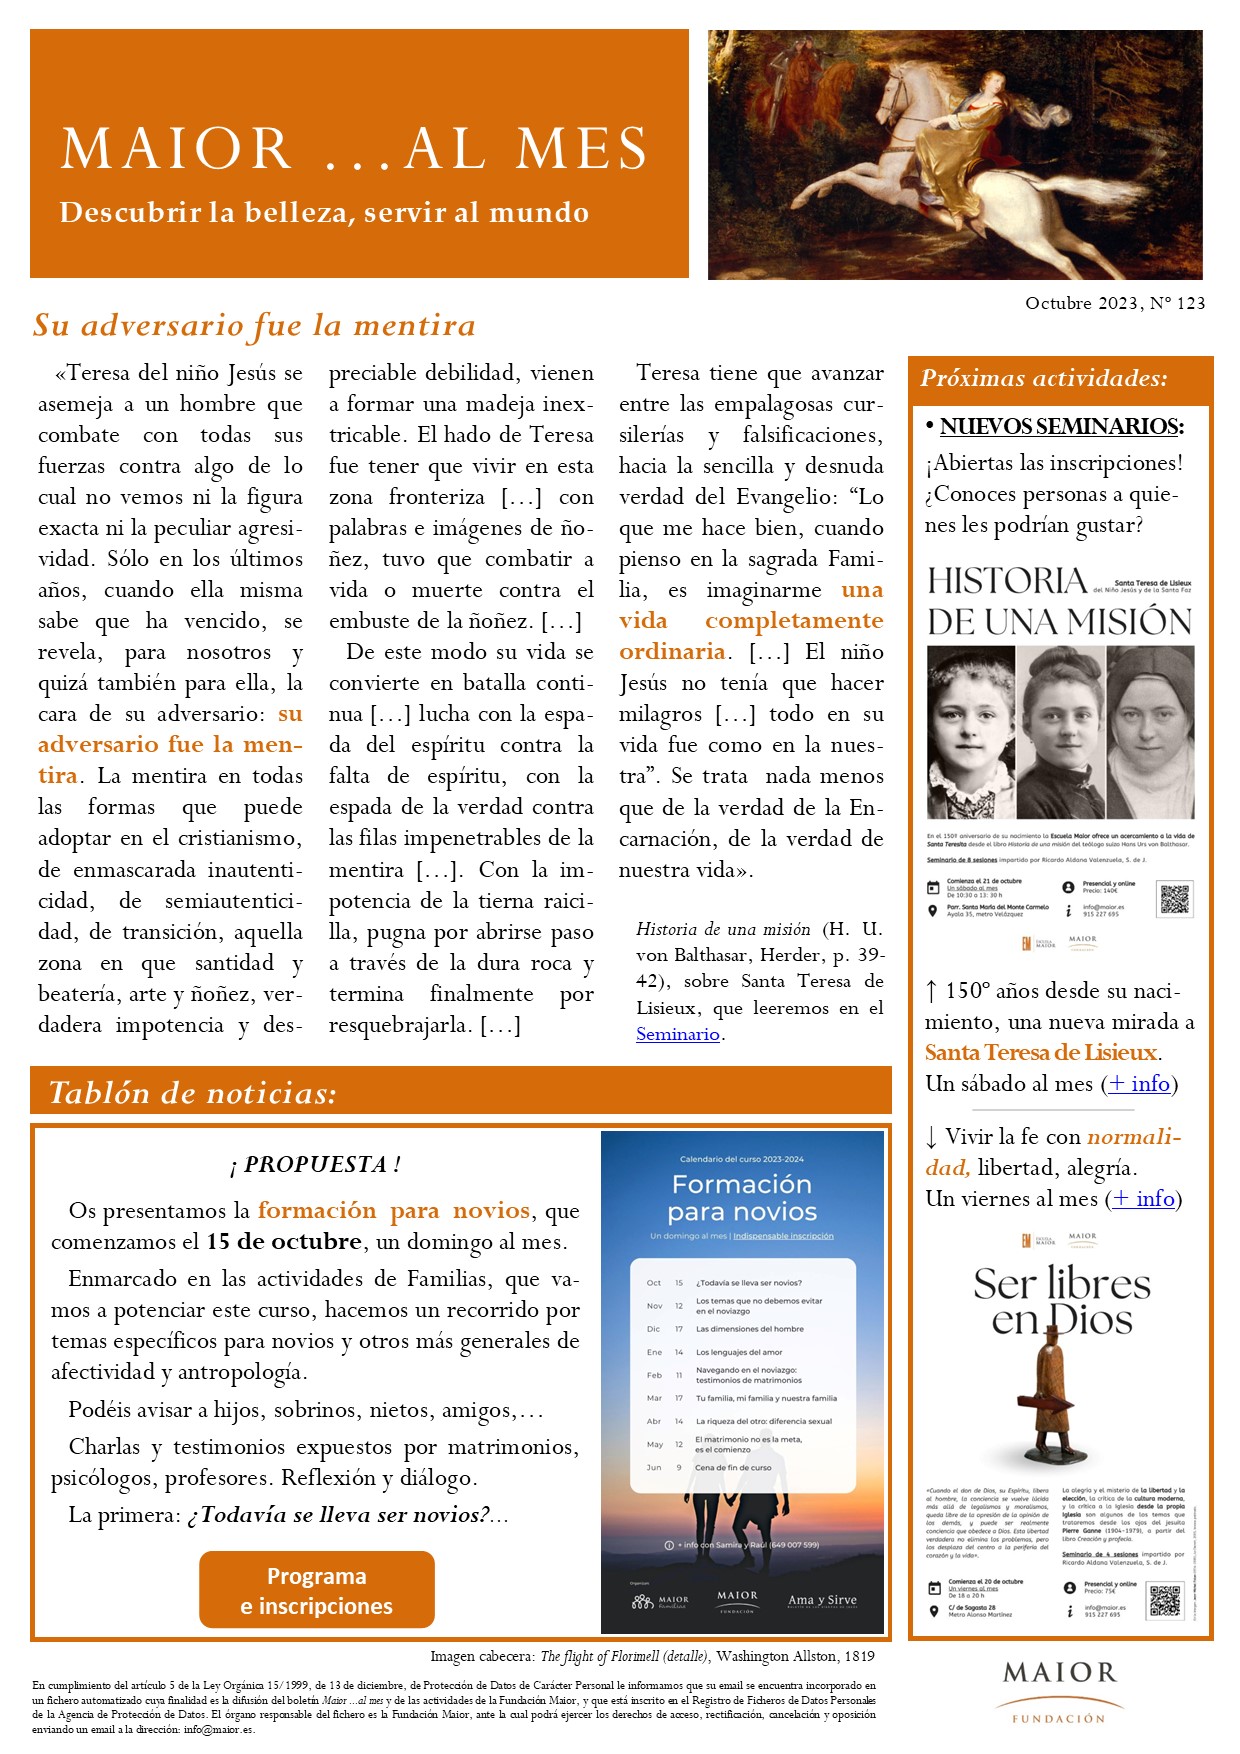 Boletín mensual de noticias y actividades de la Fundación Maior. Edición de octubre 2023